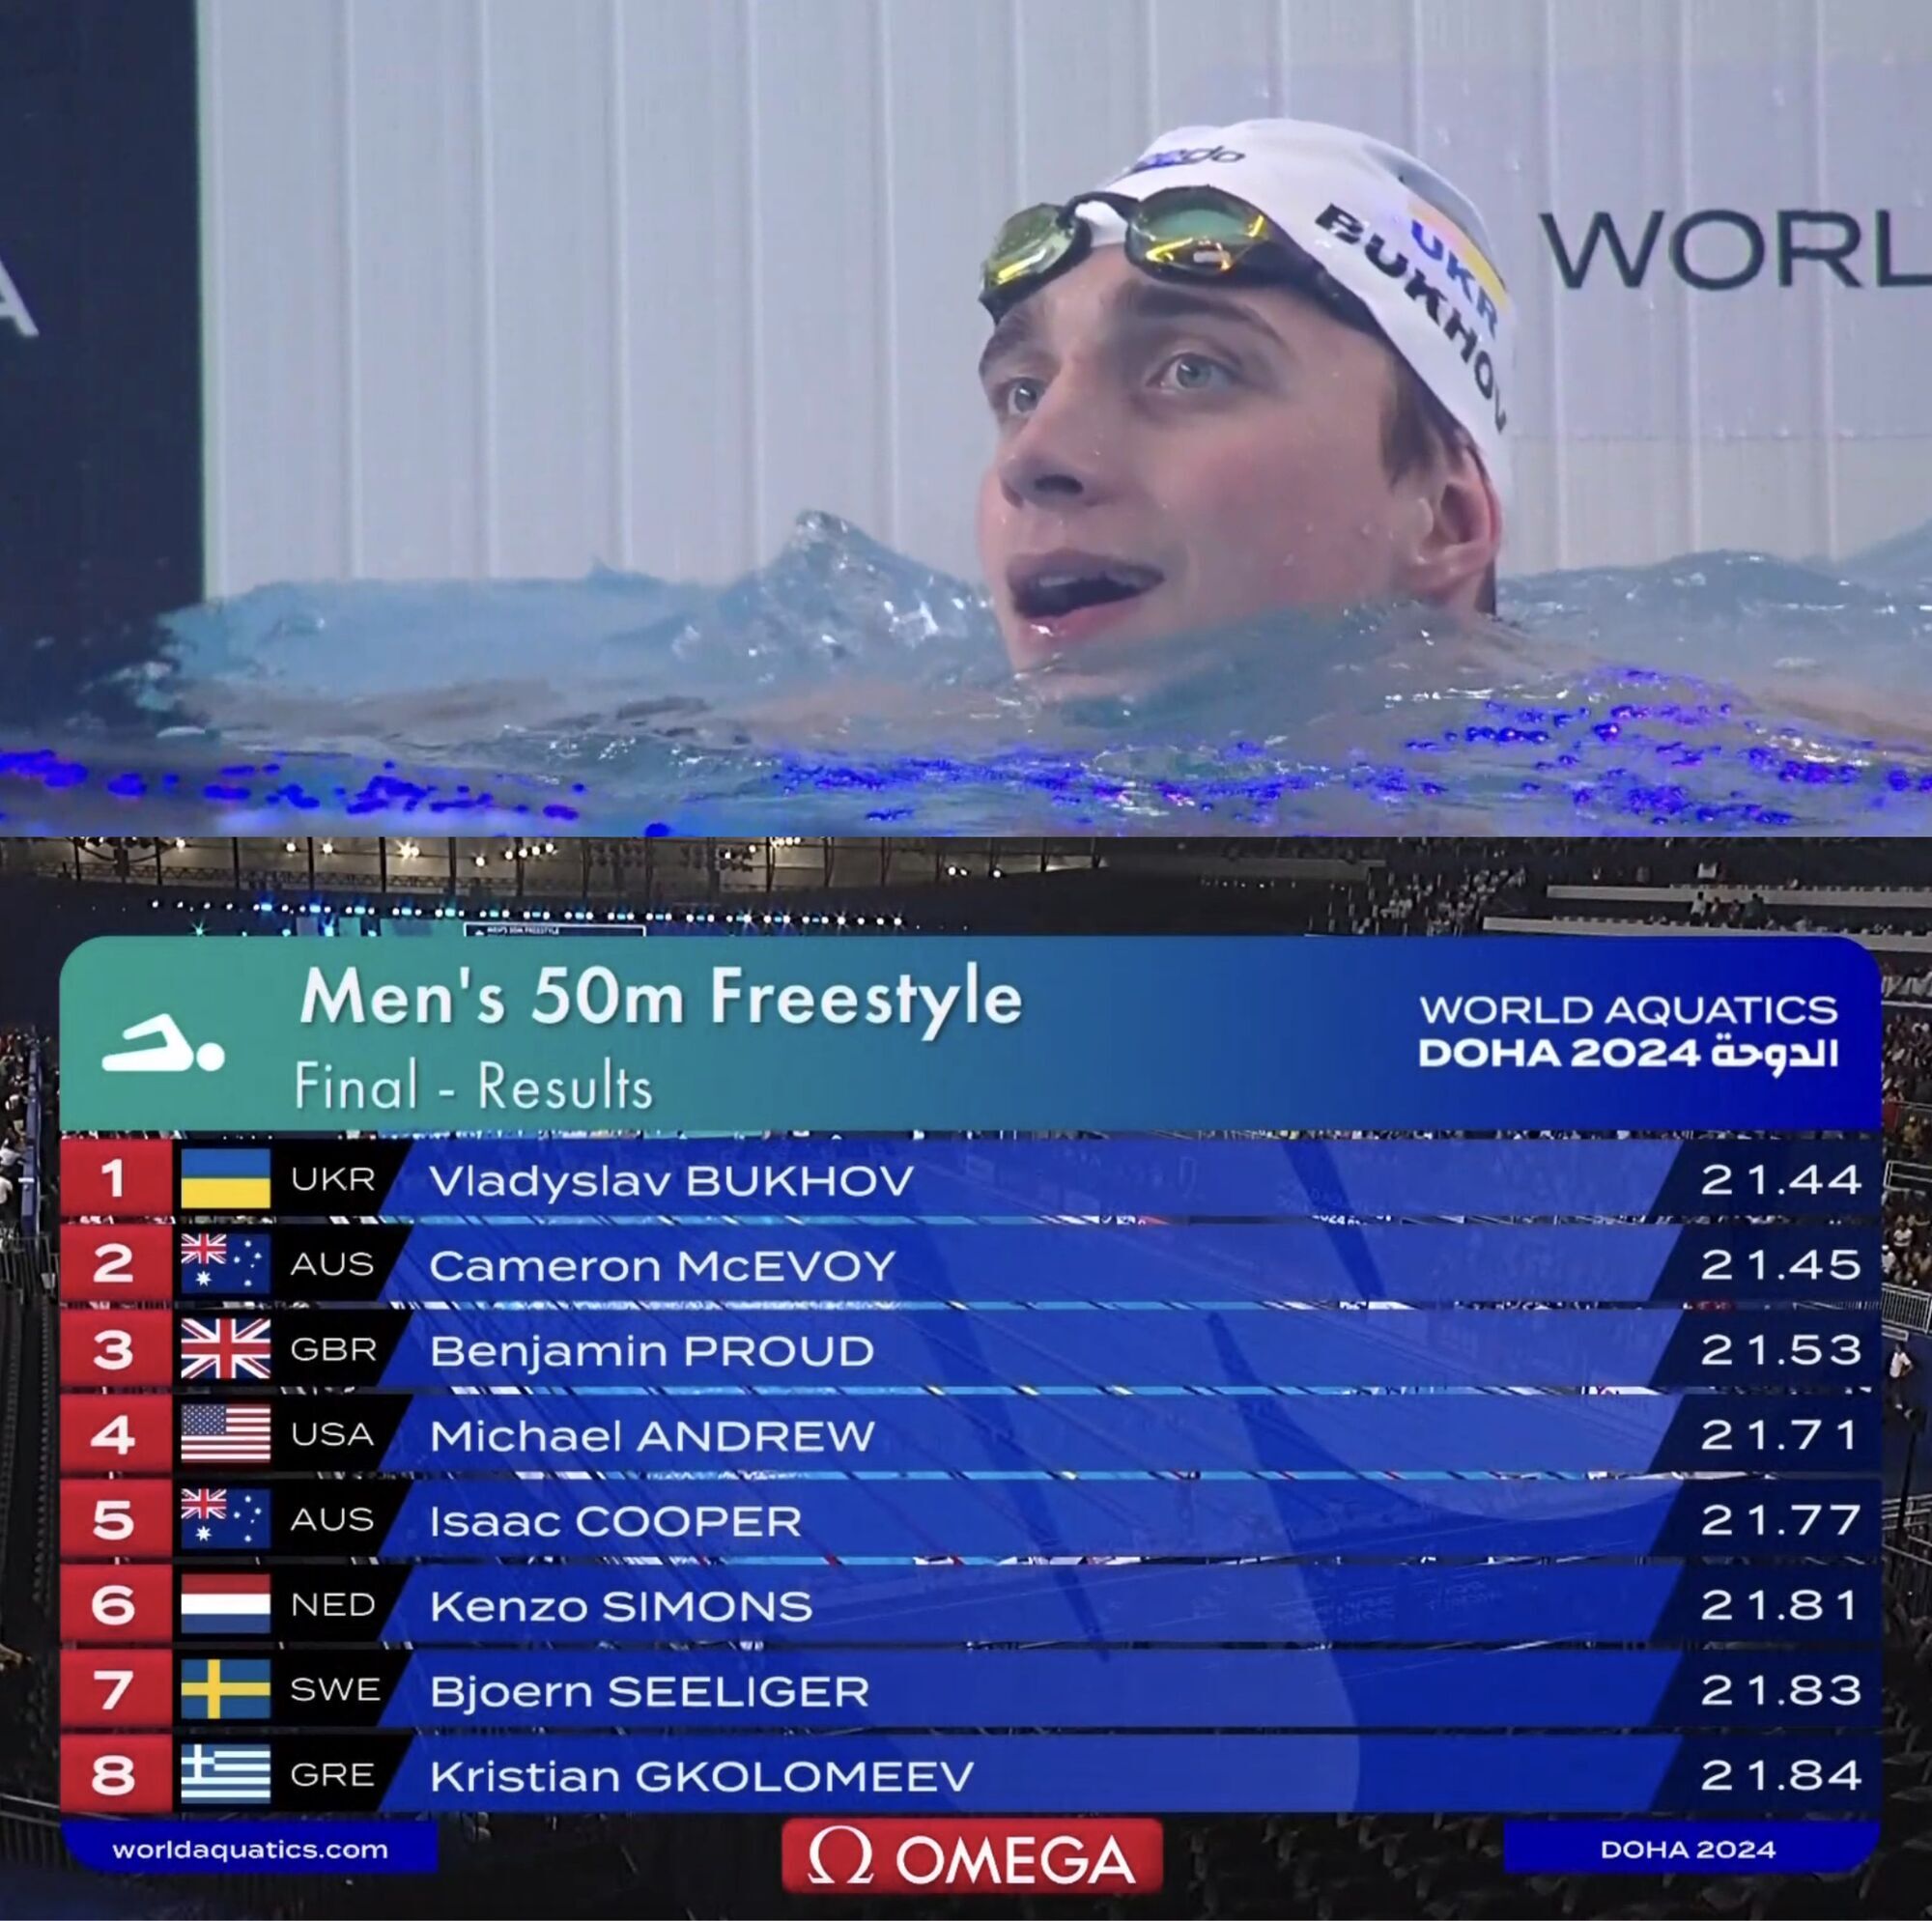 Впервые в истории! Украинский пловец сенсационно выиграл чемпионат мира, опередив соперника на 0.01 секунды